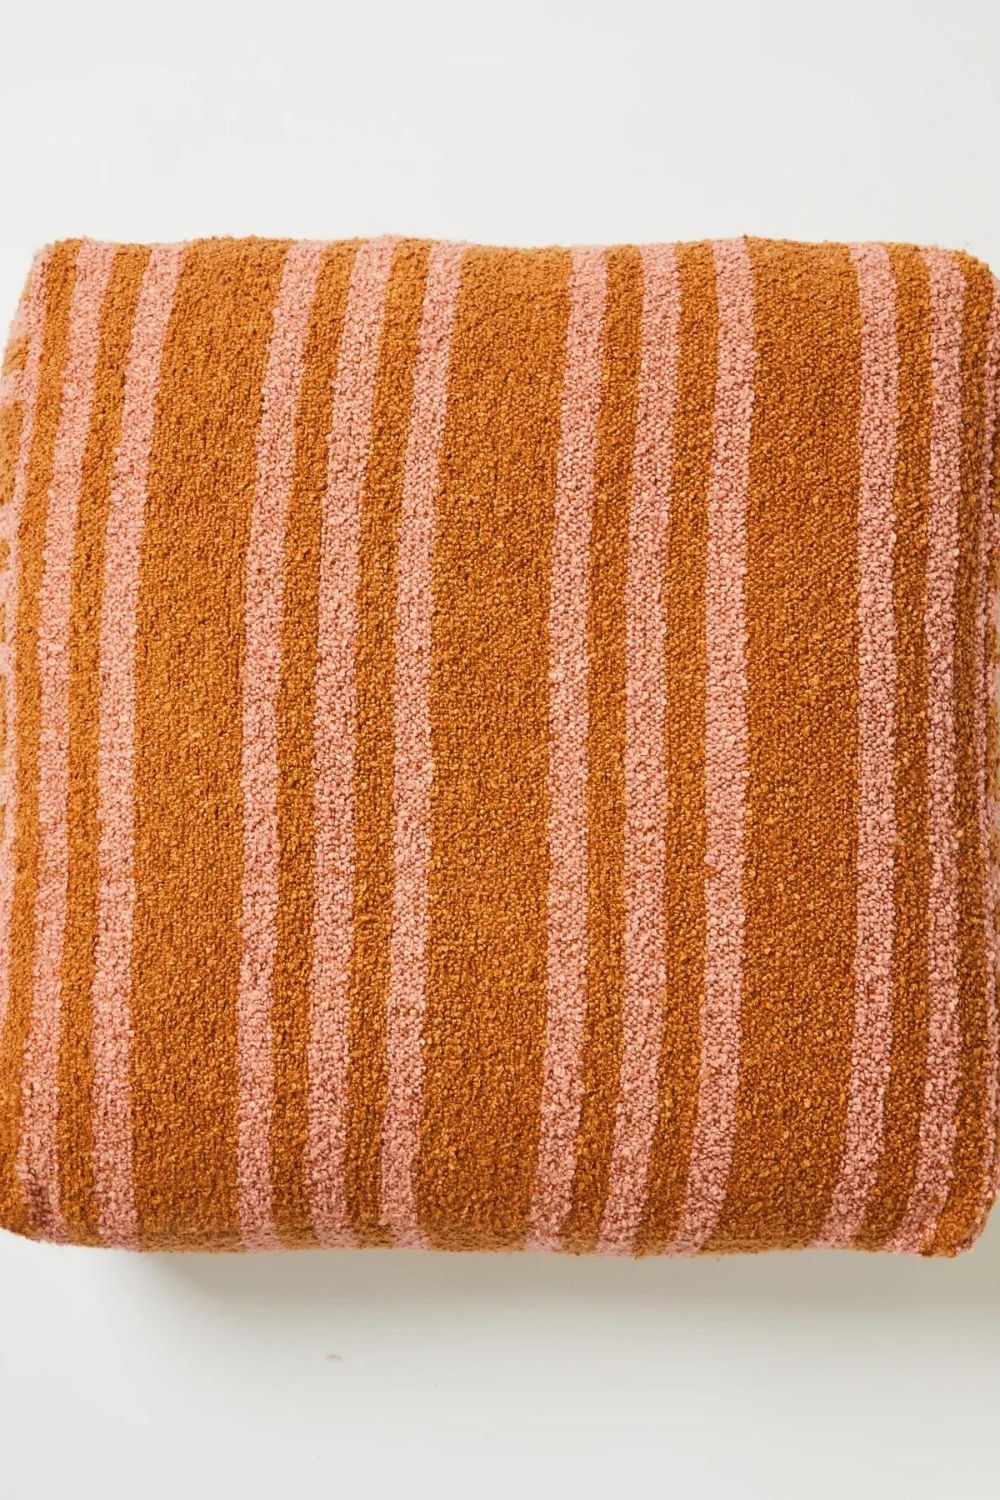 Boucle Trio Stripe Tan Pink Pouffe